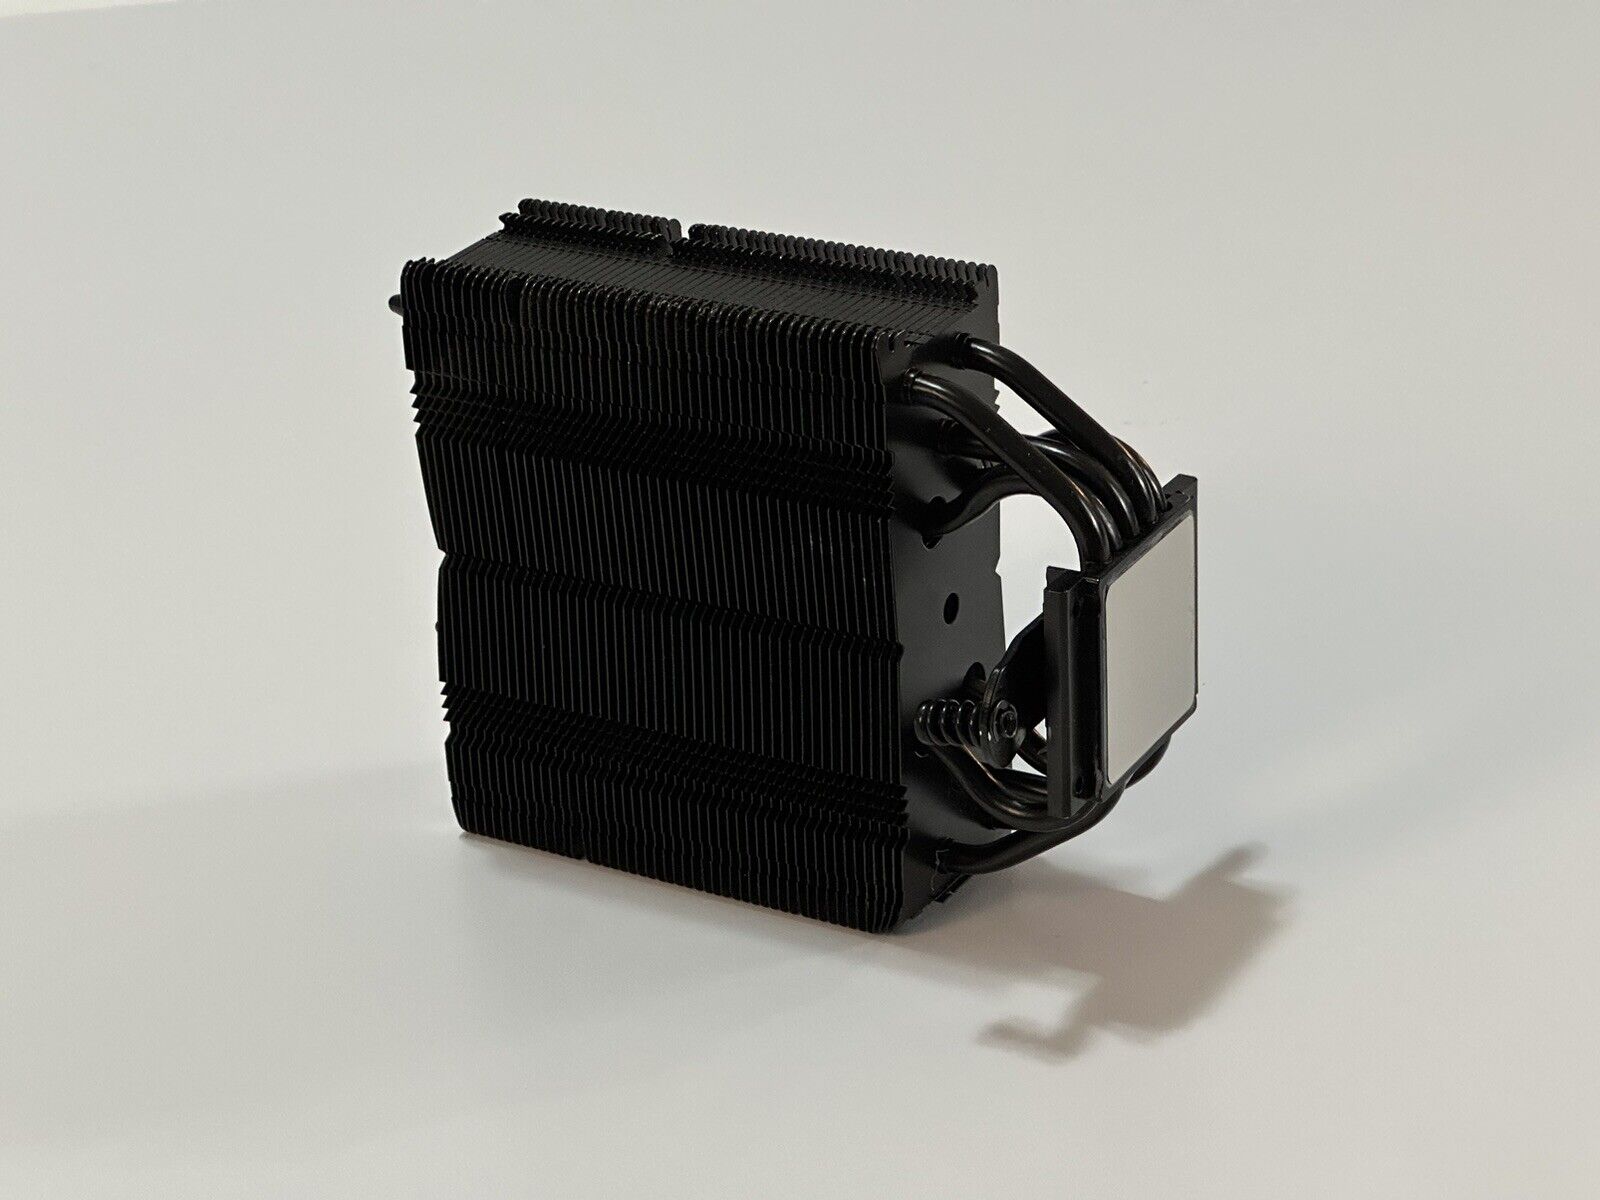 Noctua NH-U12S chromax.black 120mm Single-tower CPU Black Cooler